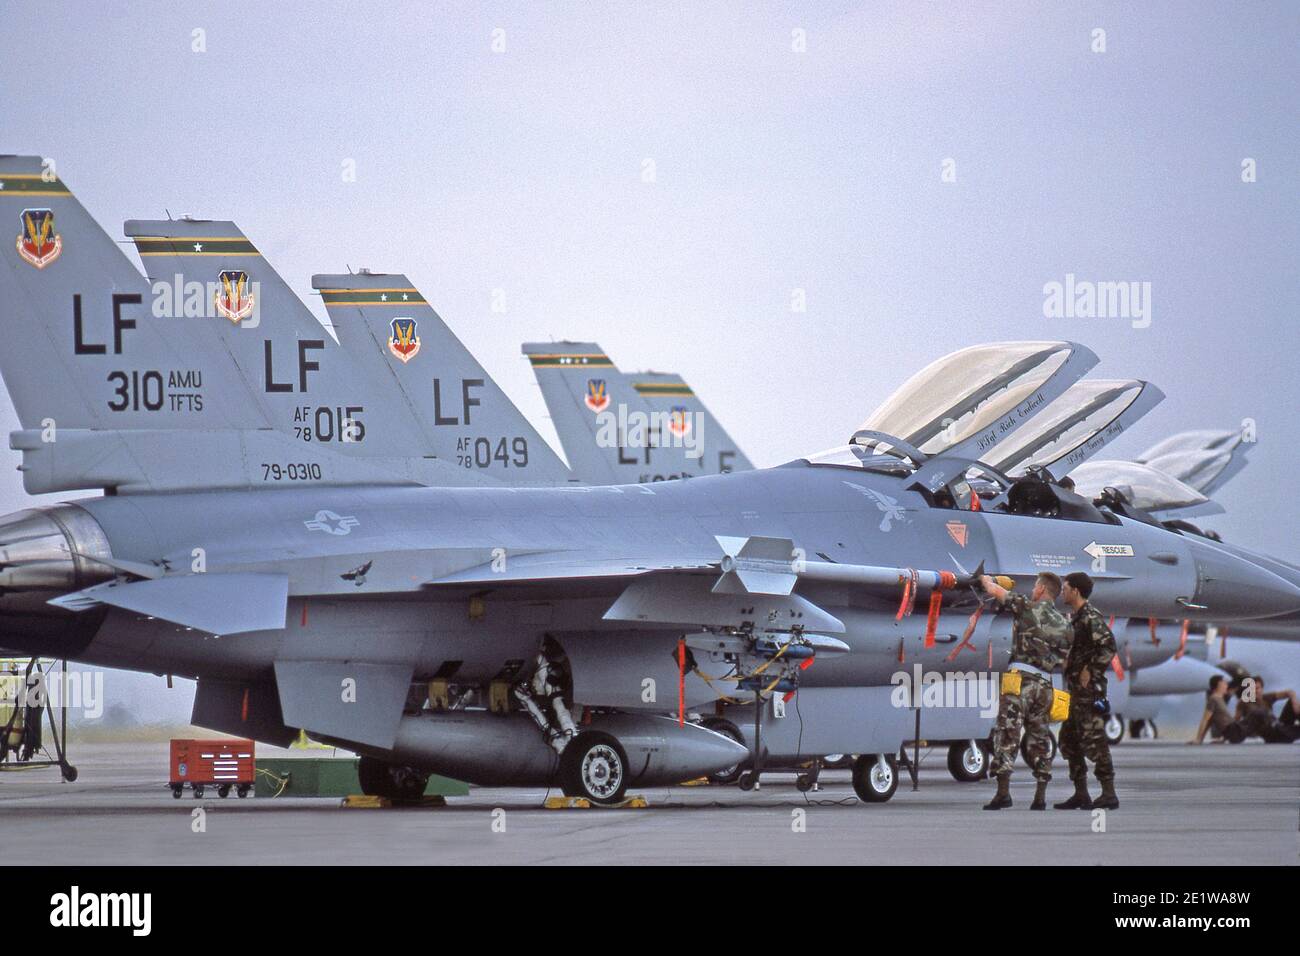 General Dynamics F-16 Fighting Falcon Stati Uniti combattente per tutte le stagioni. Anche più comunemente noto come Viper. Foto Stock